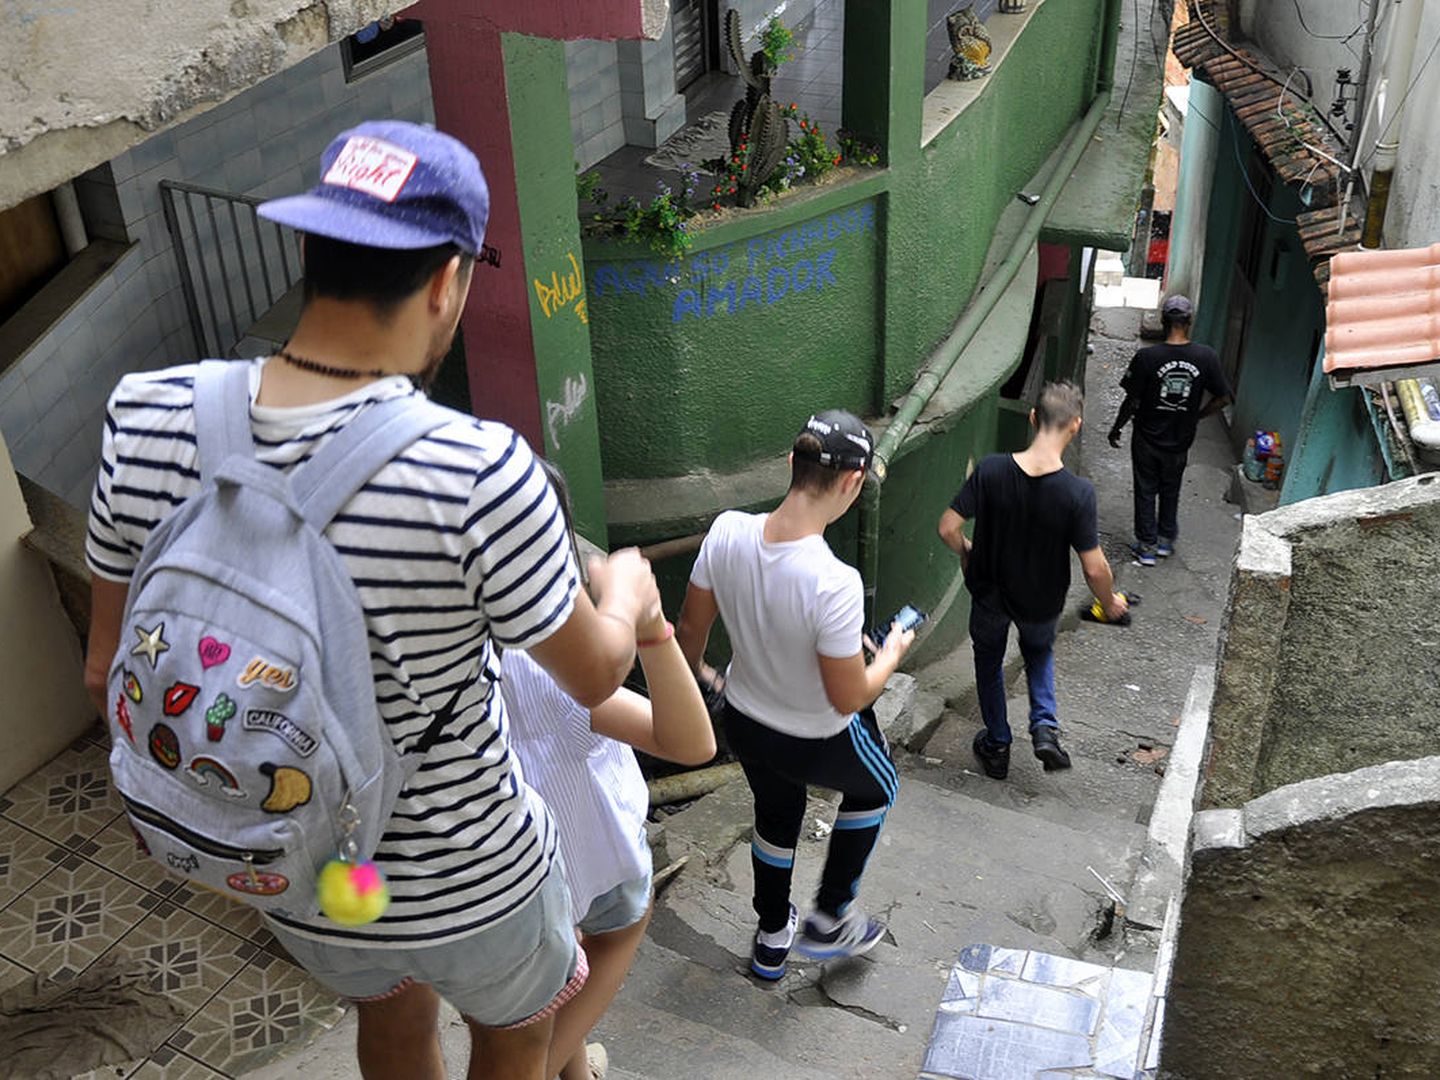 Martin guía a un grupo de turistas por los callejones de la favela Rocinha. (V. Saccone)